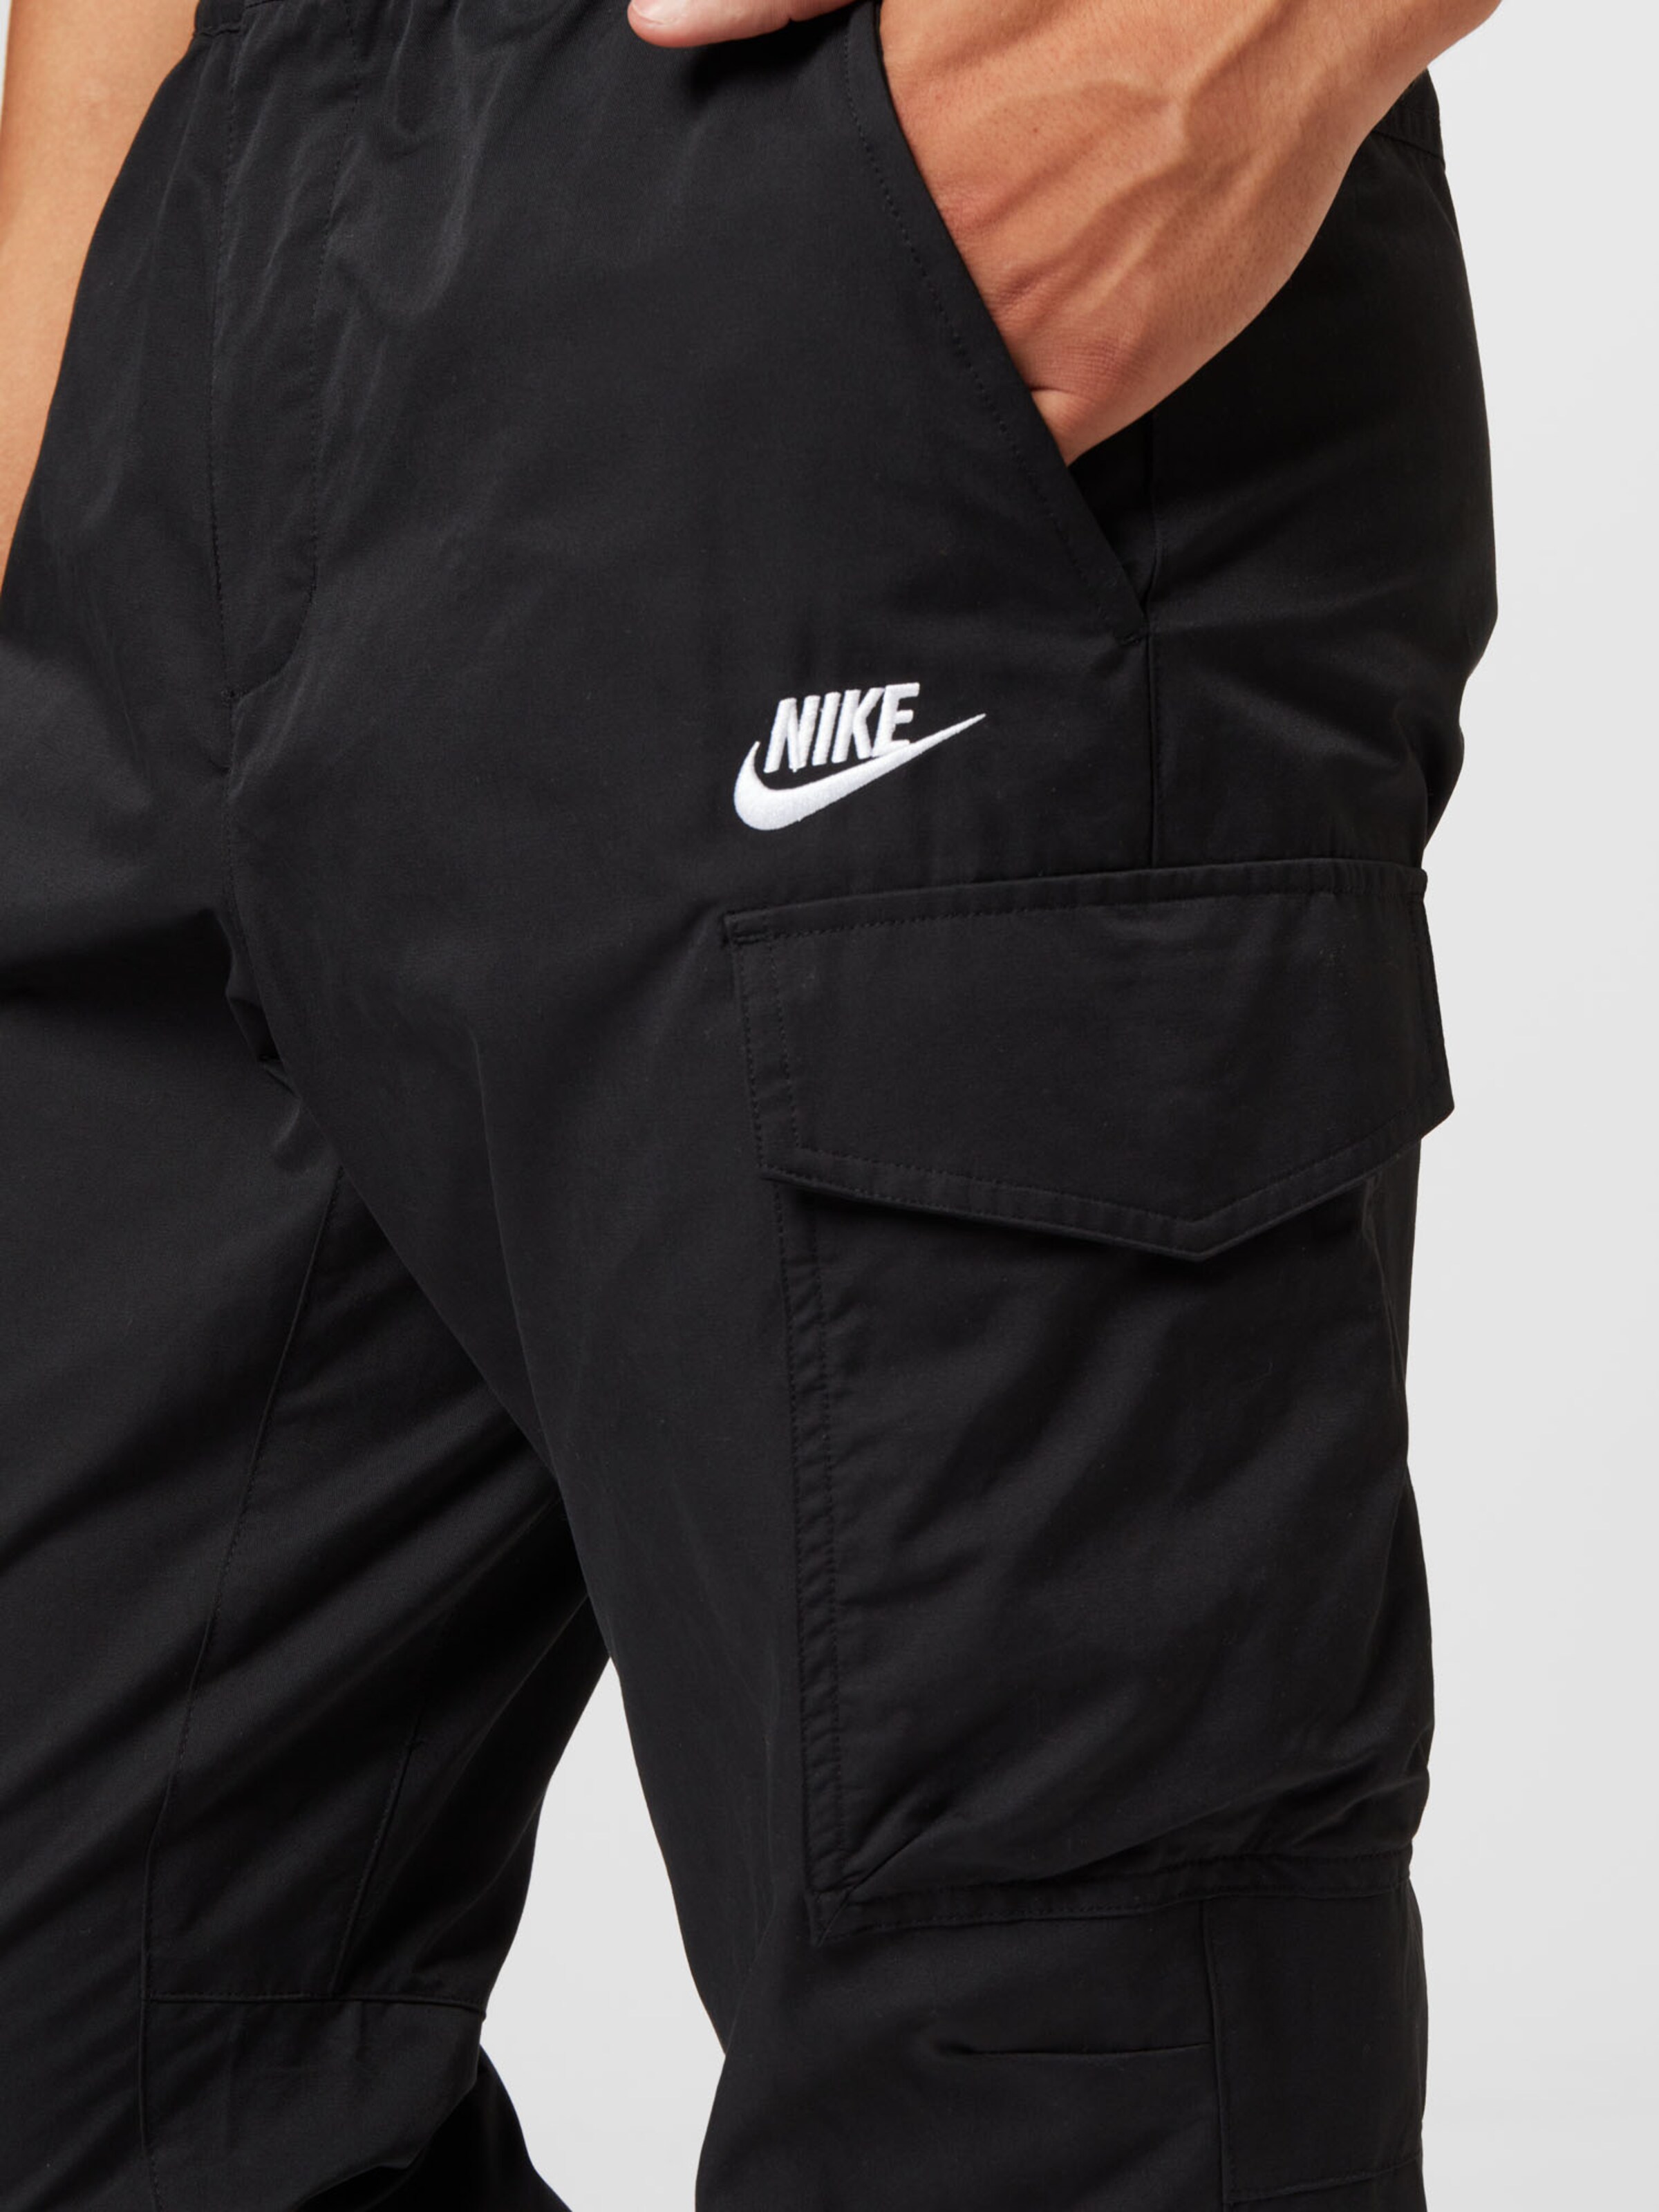 Spania Mai încet escroc  Nike Sportswear Pantaloni cu buzunare pe Negru | ABOUT YOU